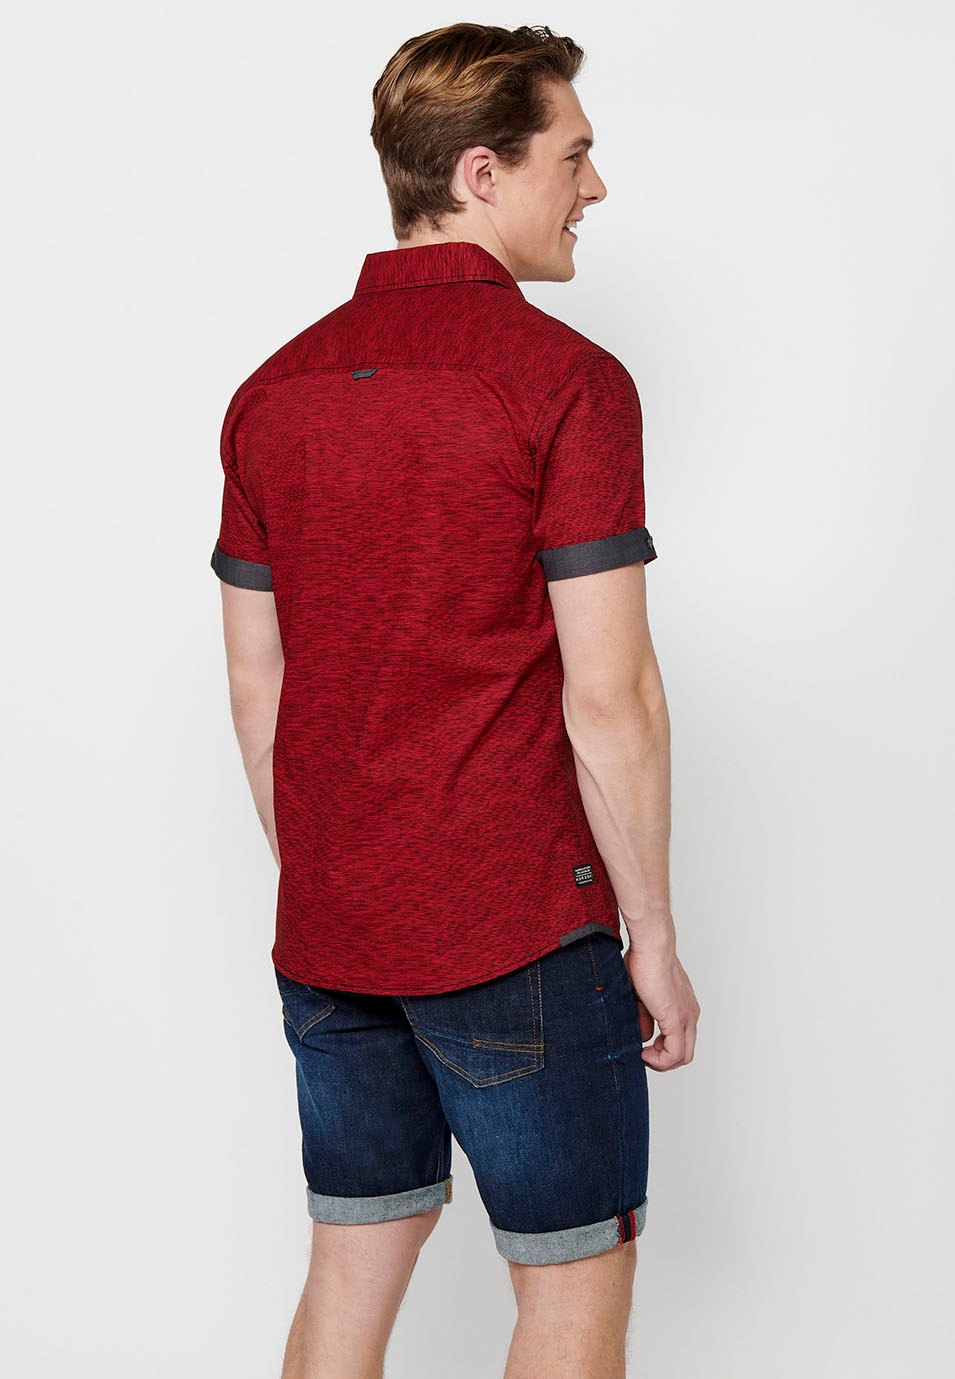 Kurzarm-Baumwollhemd, rote Farbe für Herren